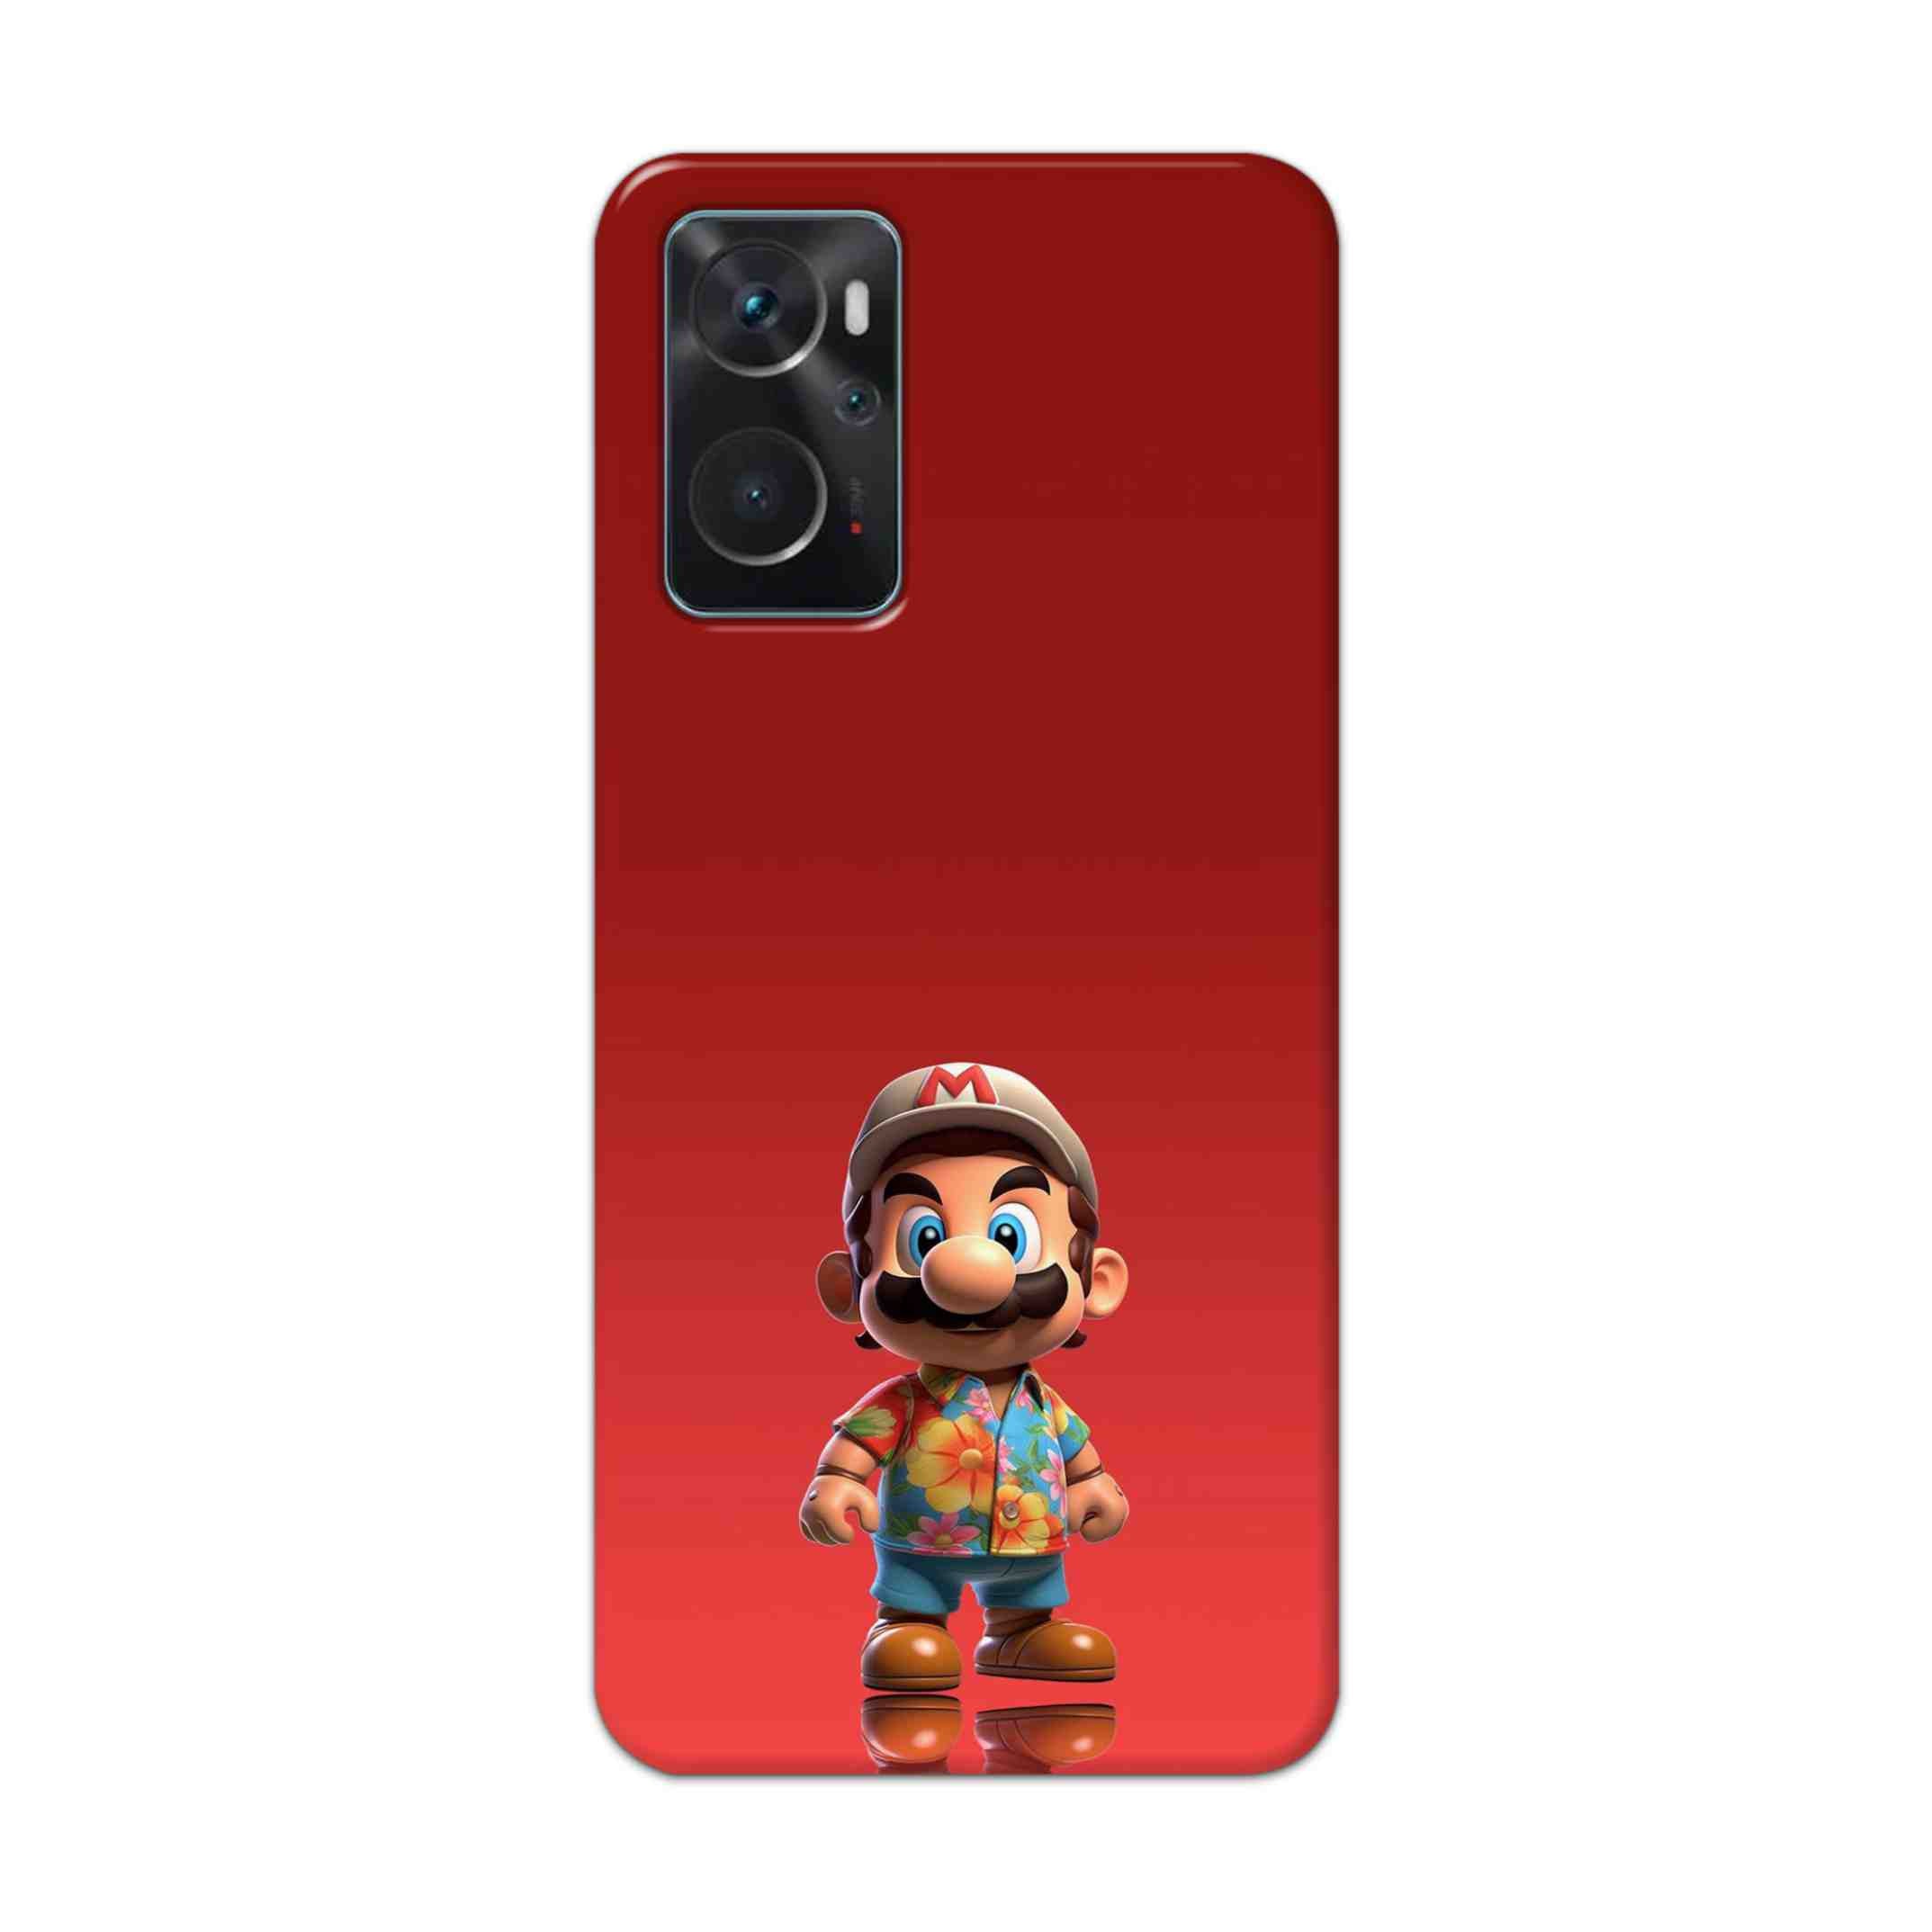 Buy Mario Hard Back Mobile Phone Case Cover For Oppo K10 Online